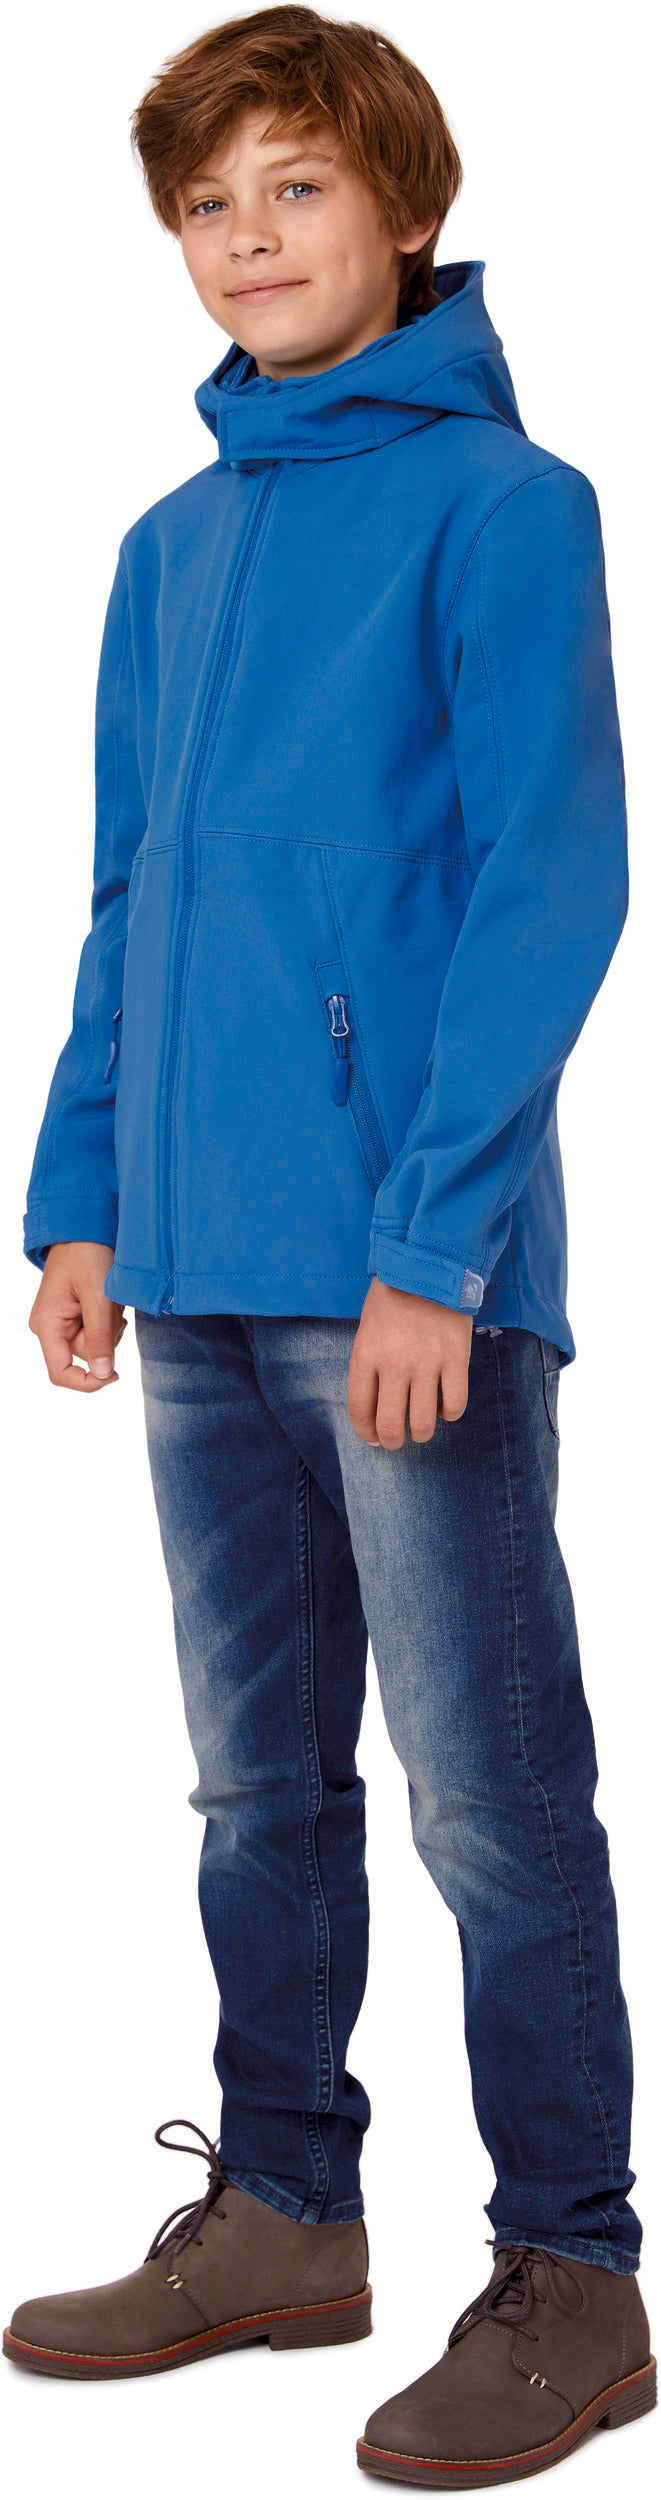 Kids' hooded softshell jacket